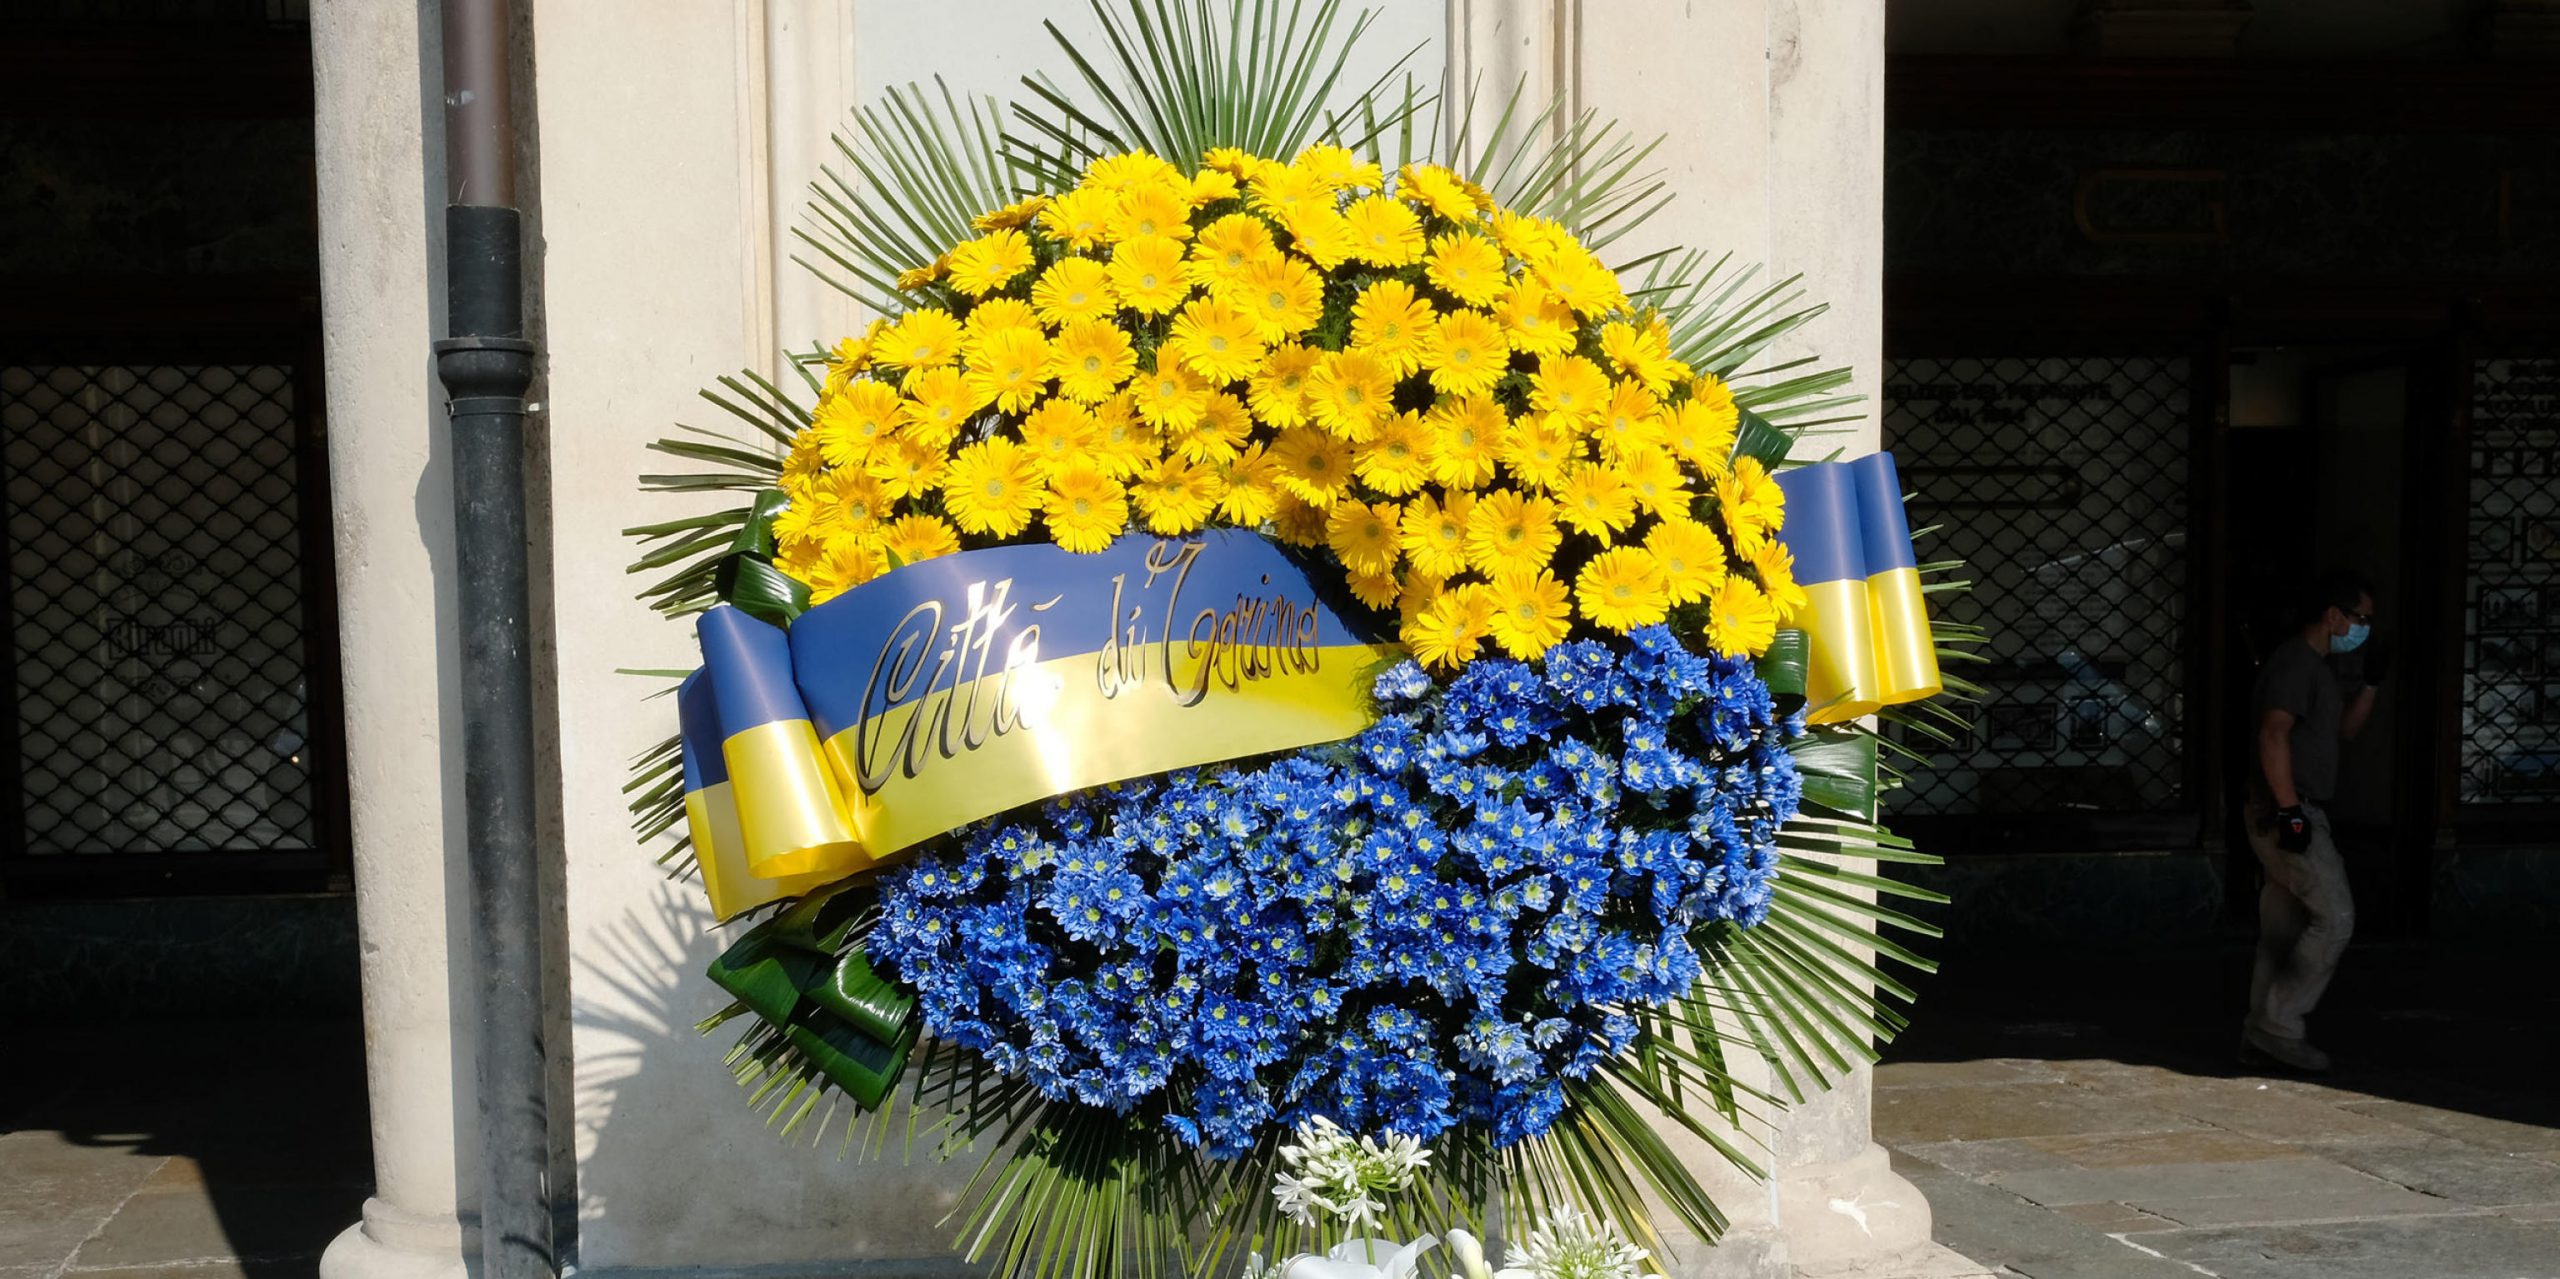 Una corona di fiori per le due vittime, Erika Pioletti e Marisa Amato, della tragedia di piazza San Carlo avvenuta durante la finale di Champions League del 3 giugno 2017. Torino, 3 giugno 2010 (ANSA/ALESSANDRO DI MARCO)